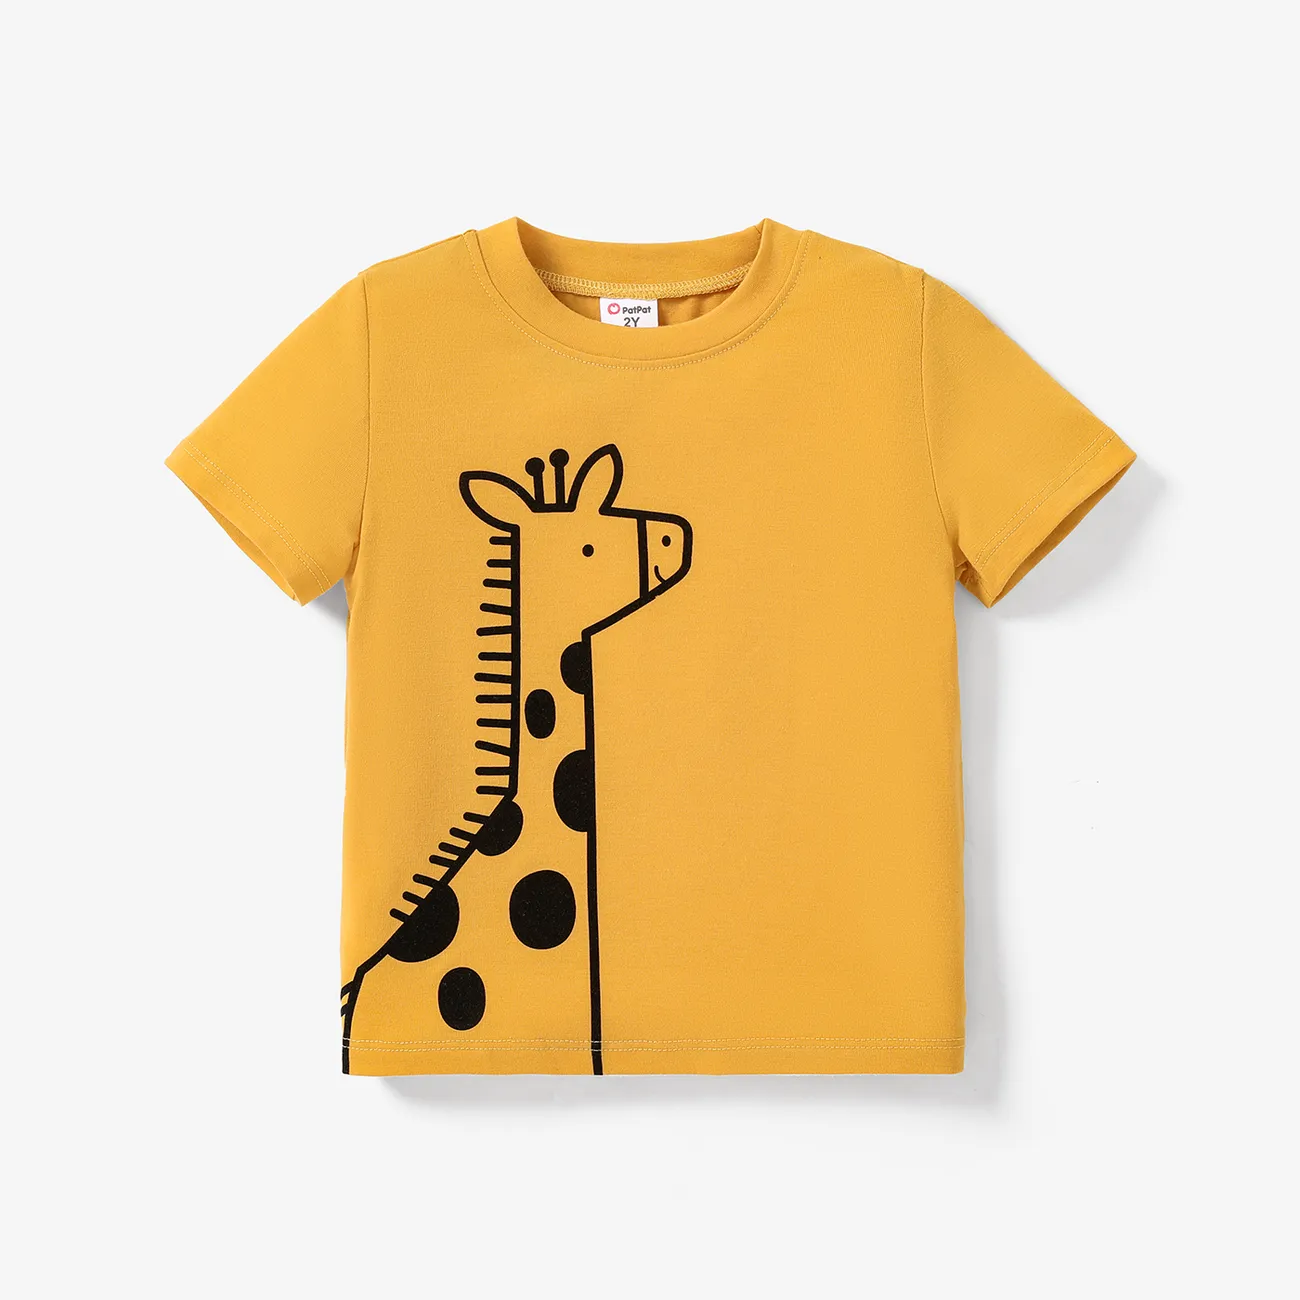 小童 男 童趣 獅子 短袖 T恤 淺橙黃色 big image 1